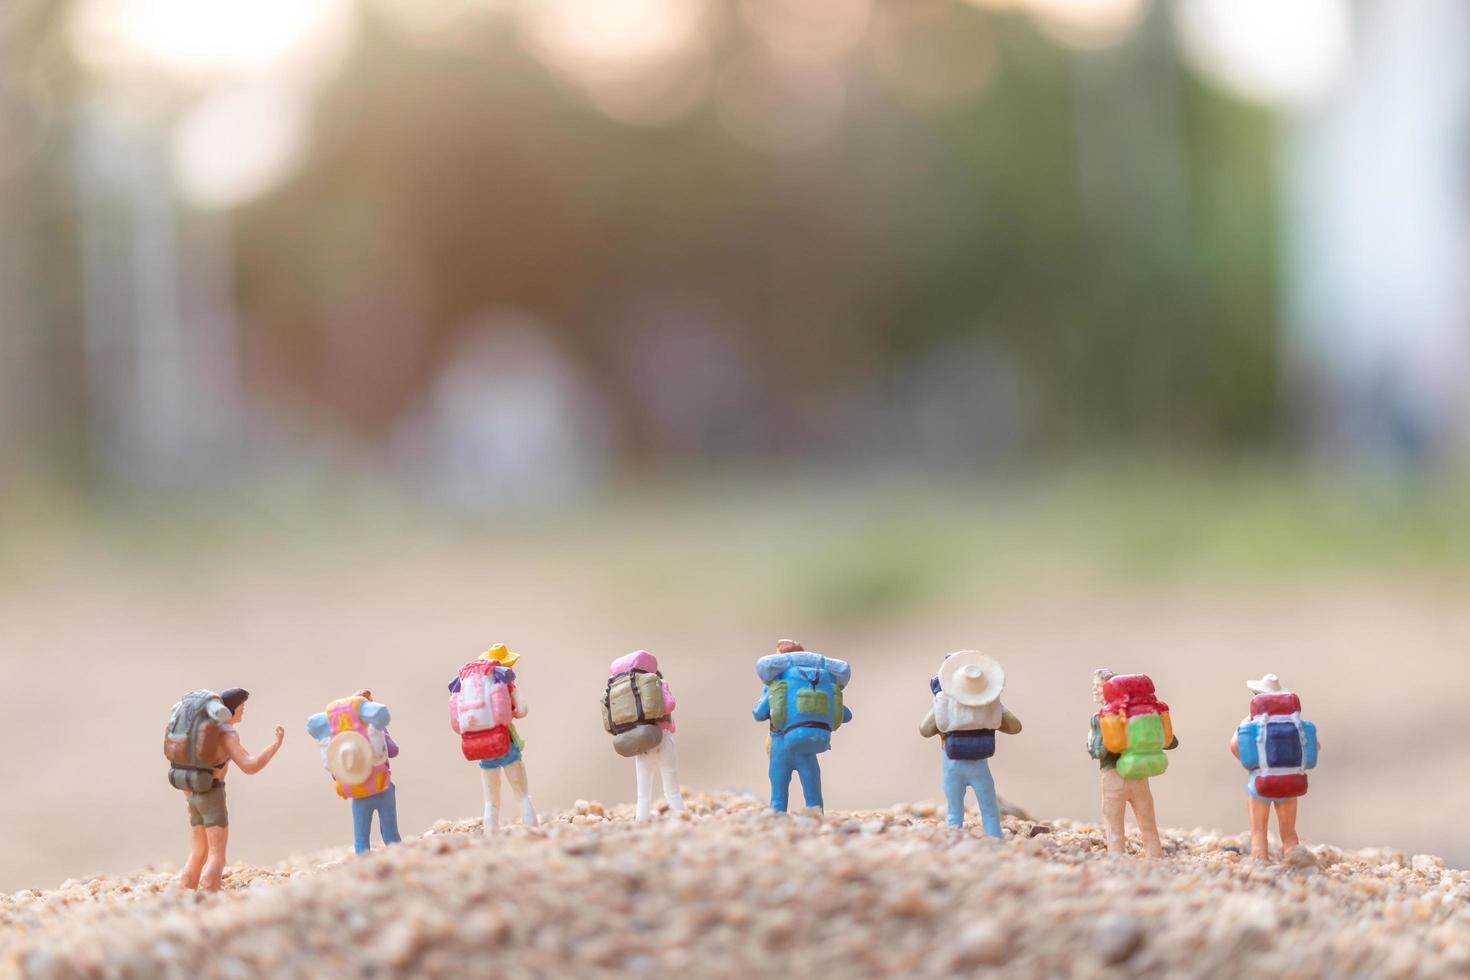 Viajeros en miniatura con mochilas caminando sobre arena, concepto de viaje y aventura foto